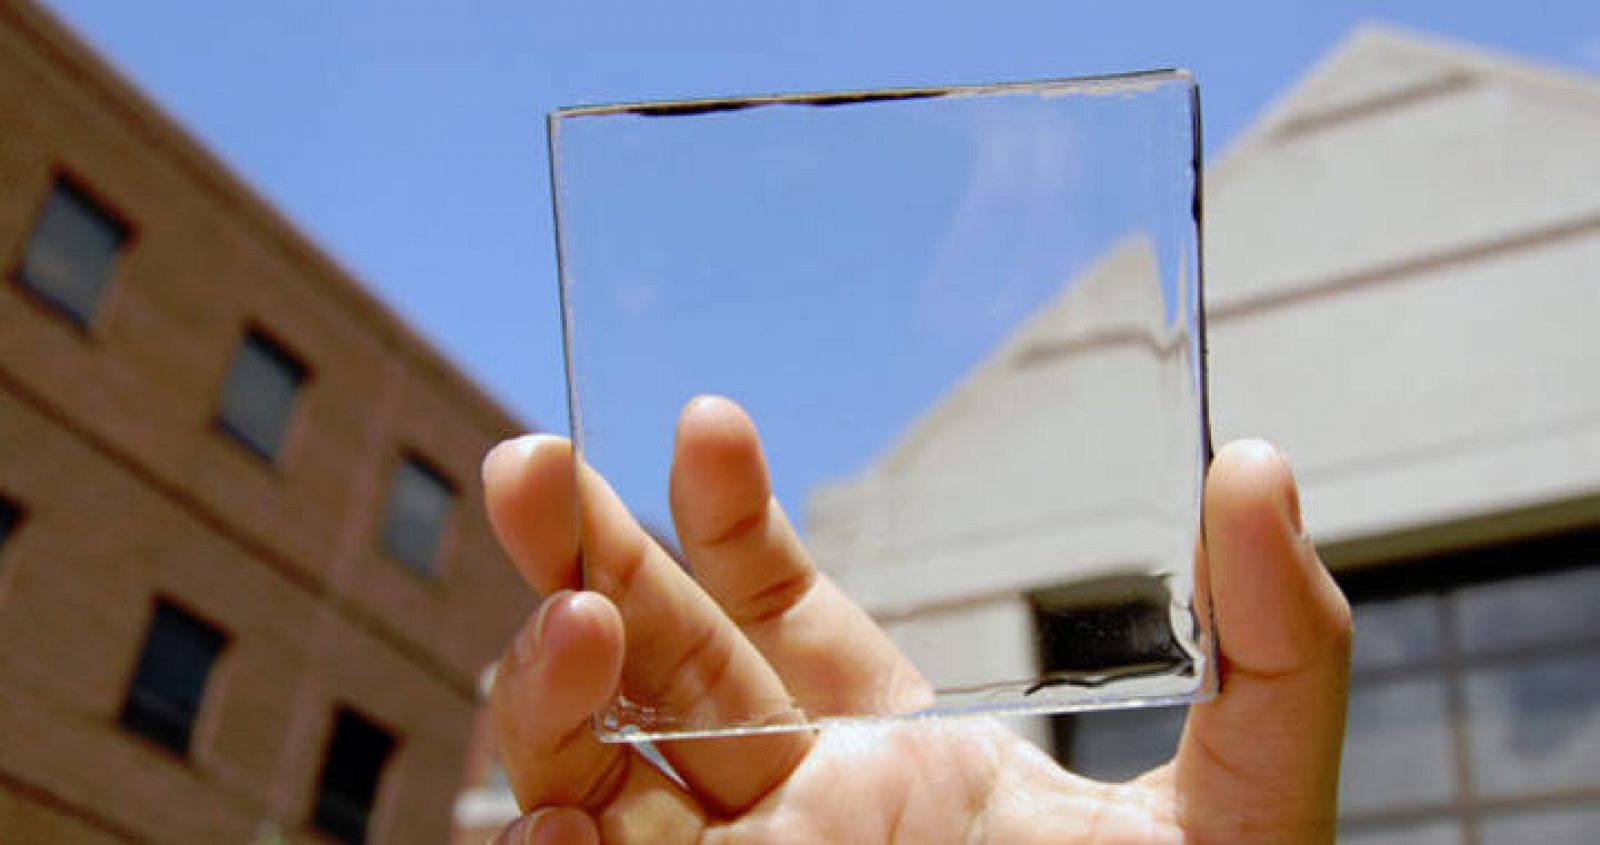  Uno de los paneles solares transparentes capaces de producir electricidad a partir de la energía solar.